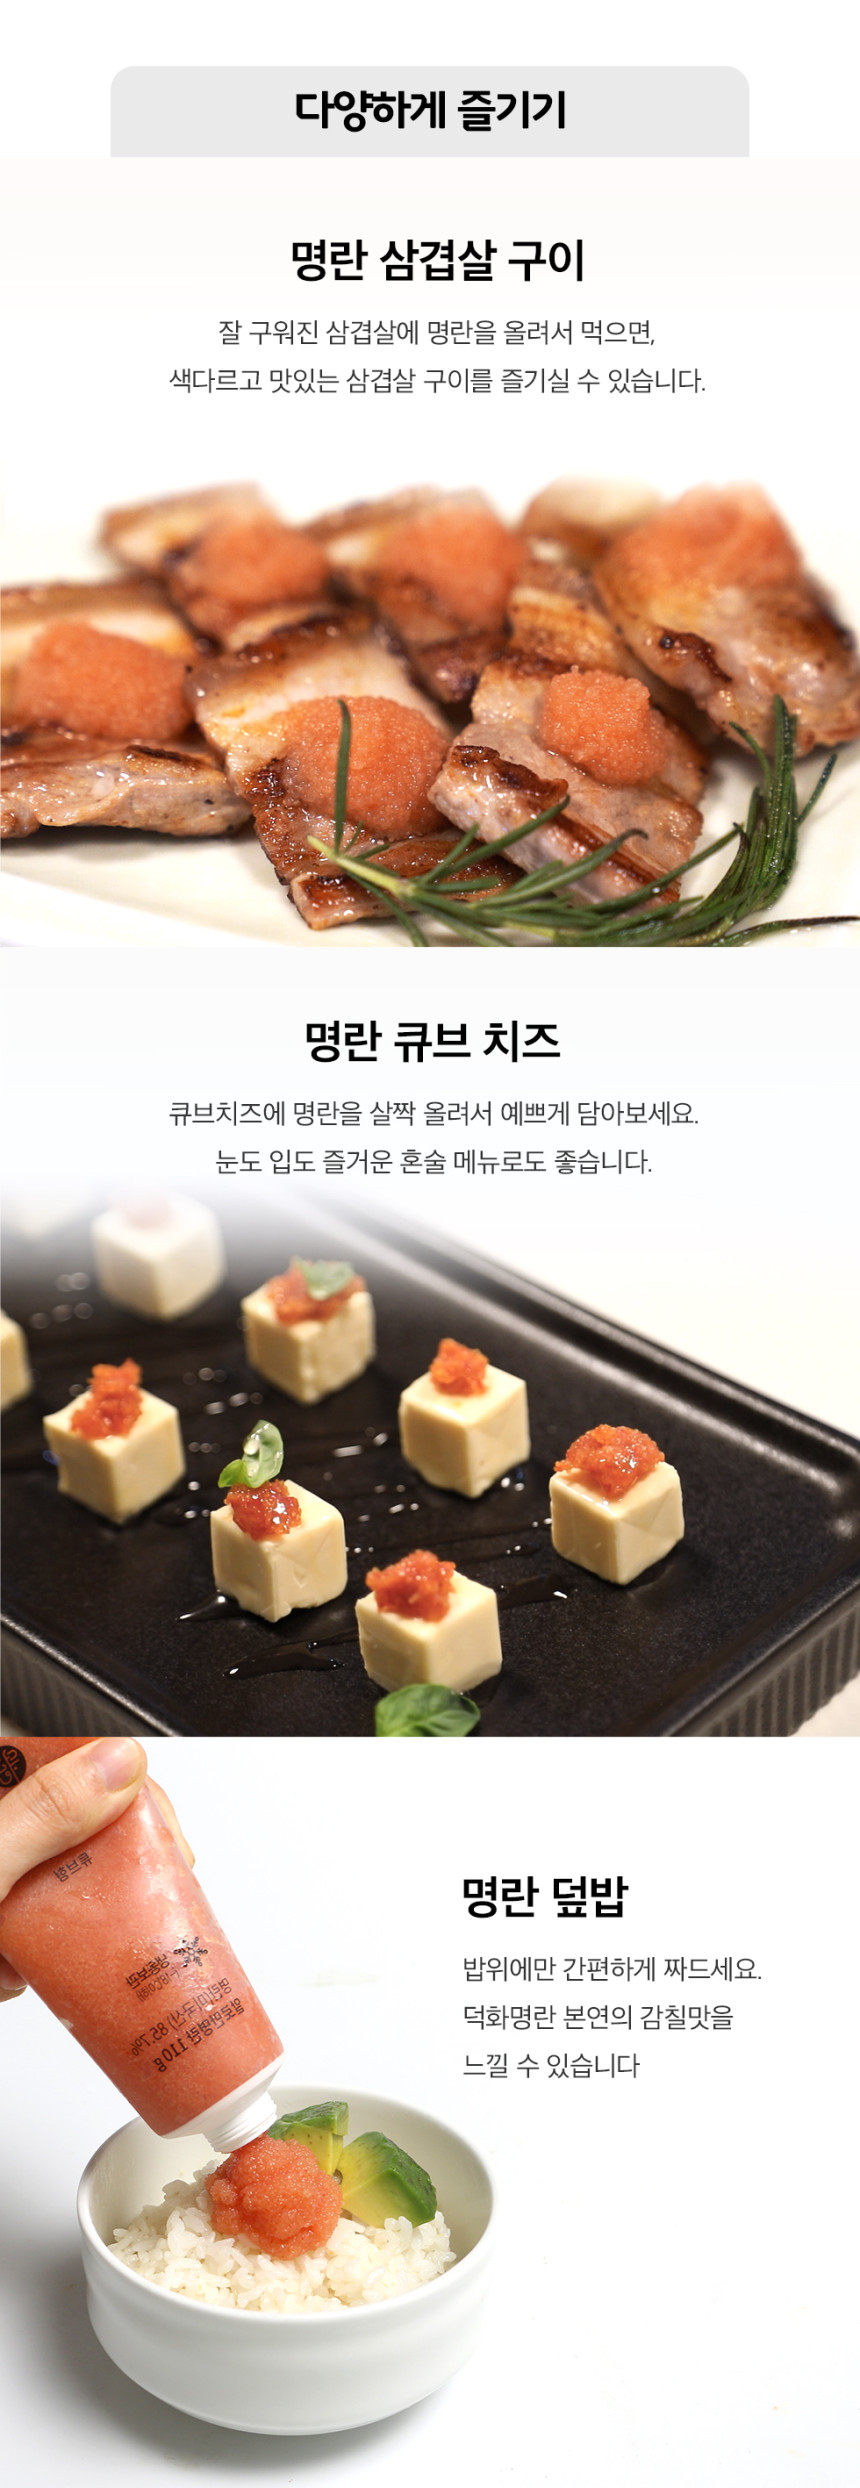 韓國食品-[덕화명란] 튜브형명란 110g